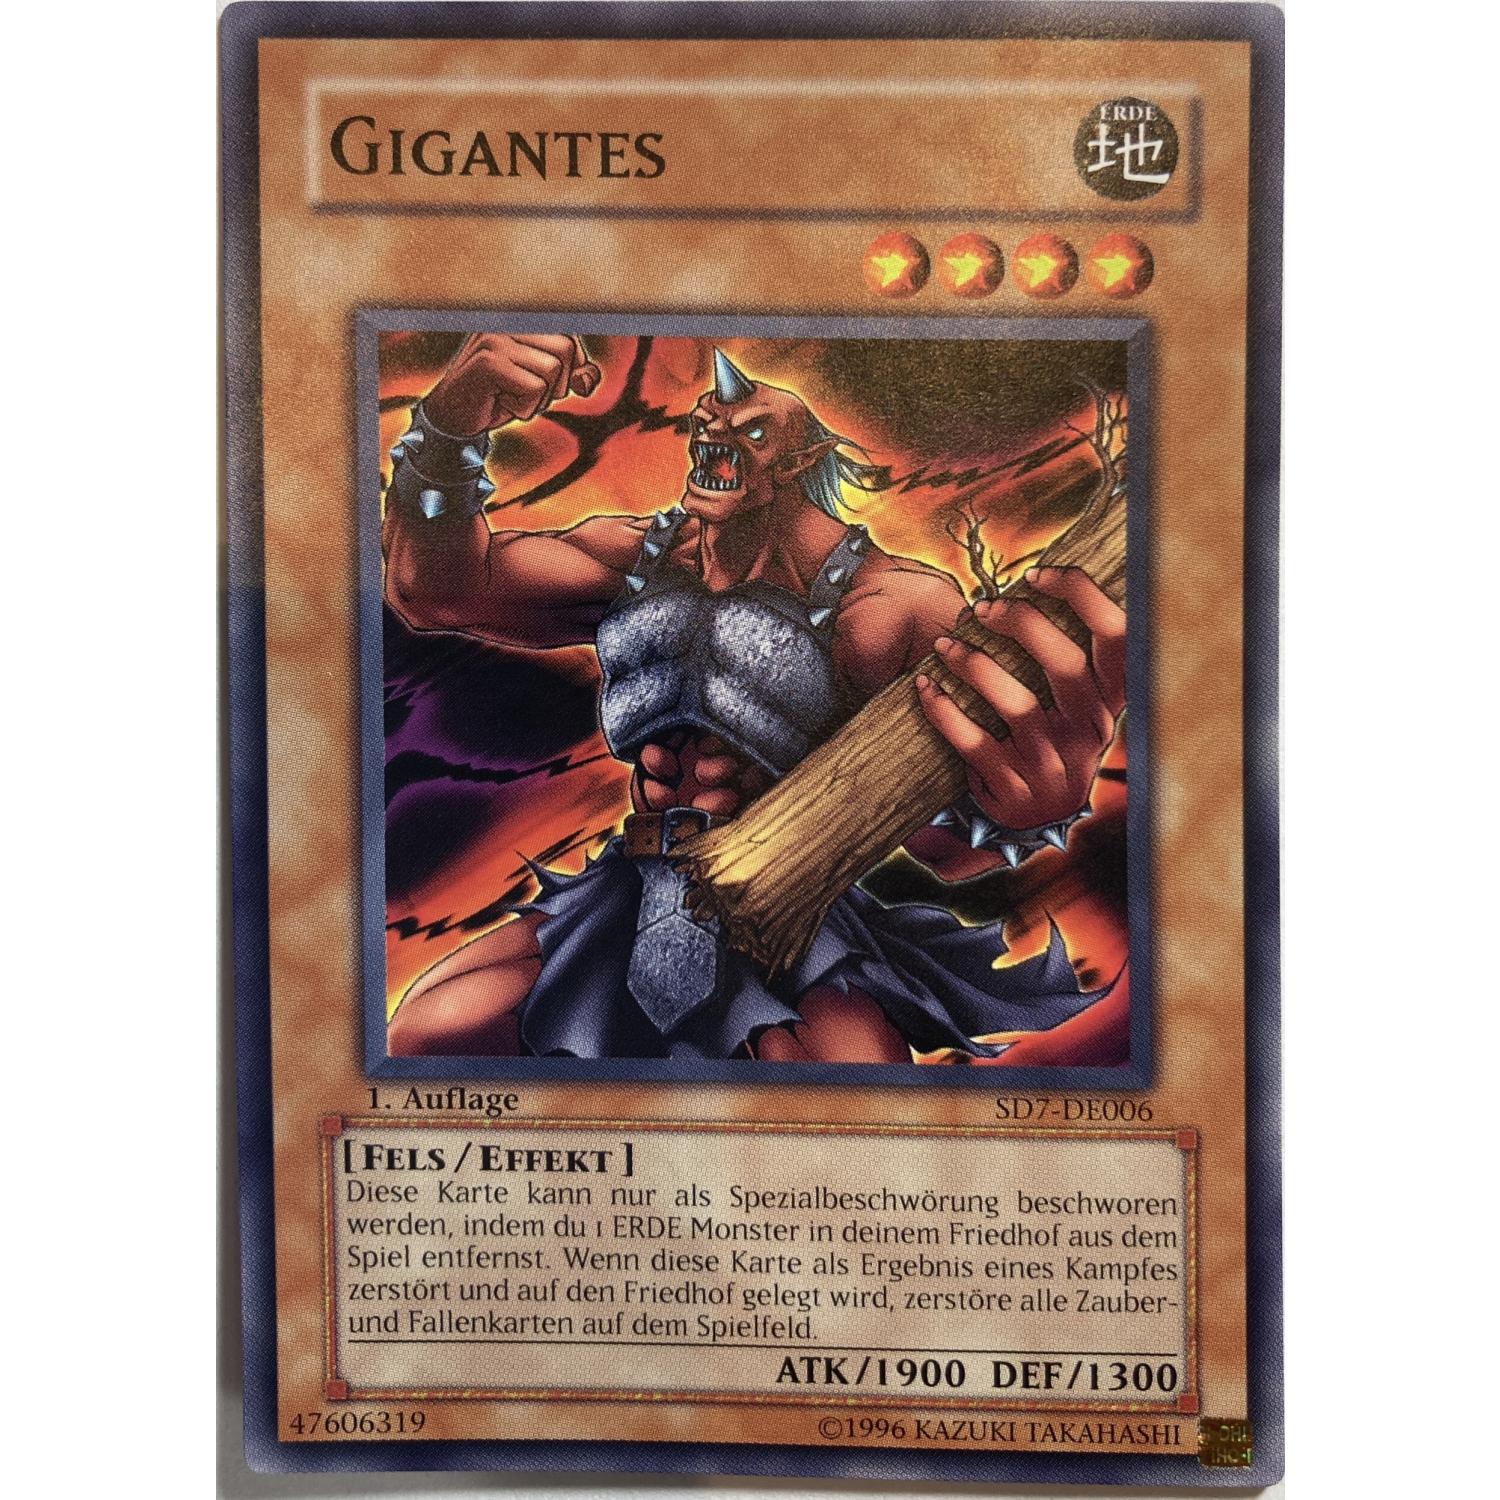 Gigantes 1. Auflage SD7-DE006 Common